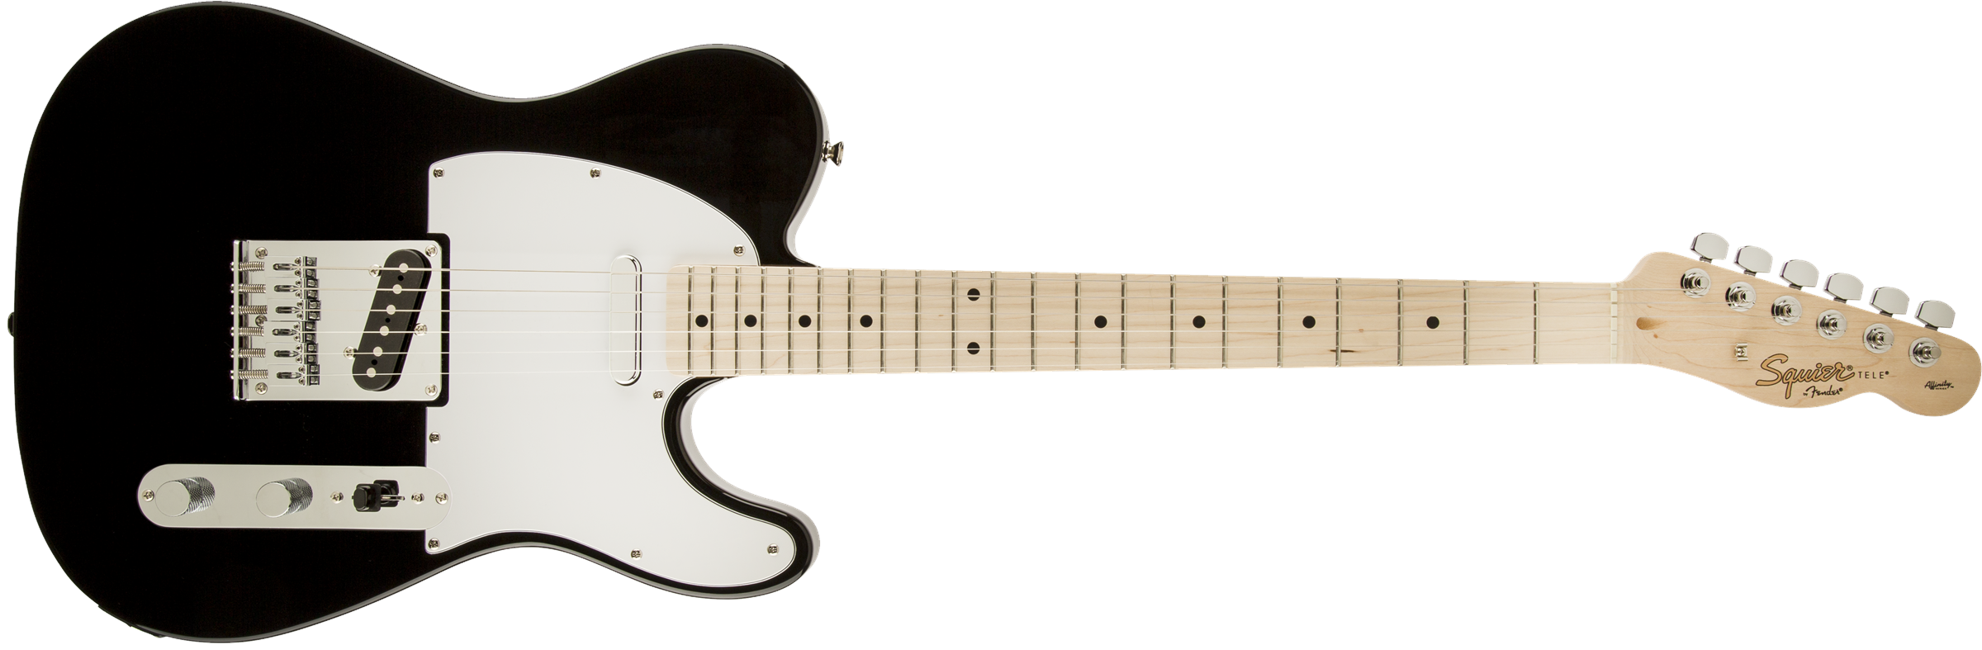 Squier By Fender - Affinity Telecaster - Elektrisk Guitar (Black)